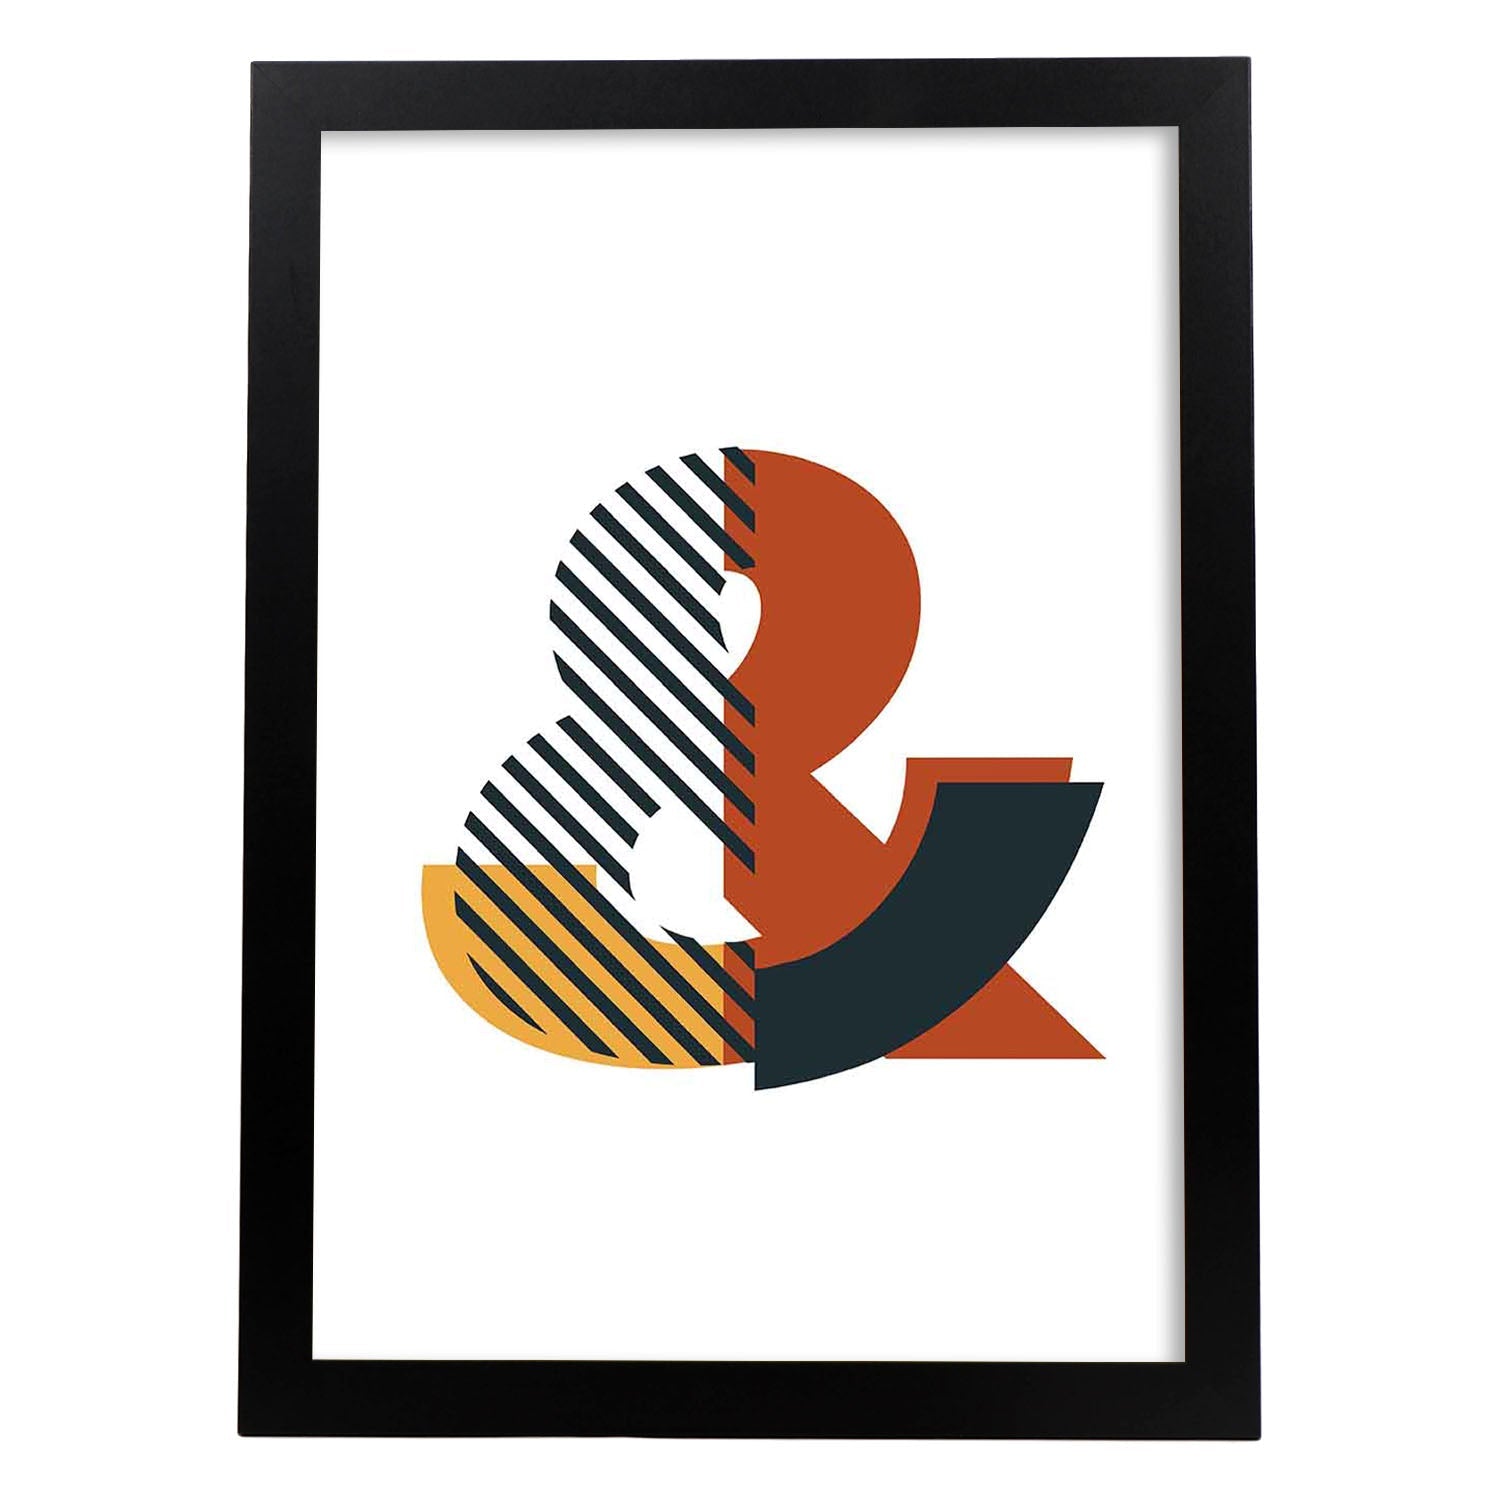 Poster de letra &. Lámina estilo Geometria con imágenes del alfabeto.-Artwork-Nacnic-A3-Marco Negro-Nacnic Estudio SL